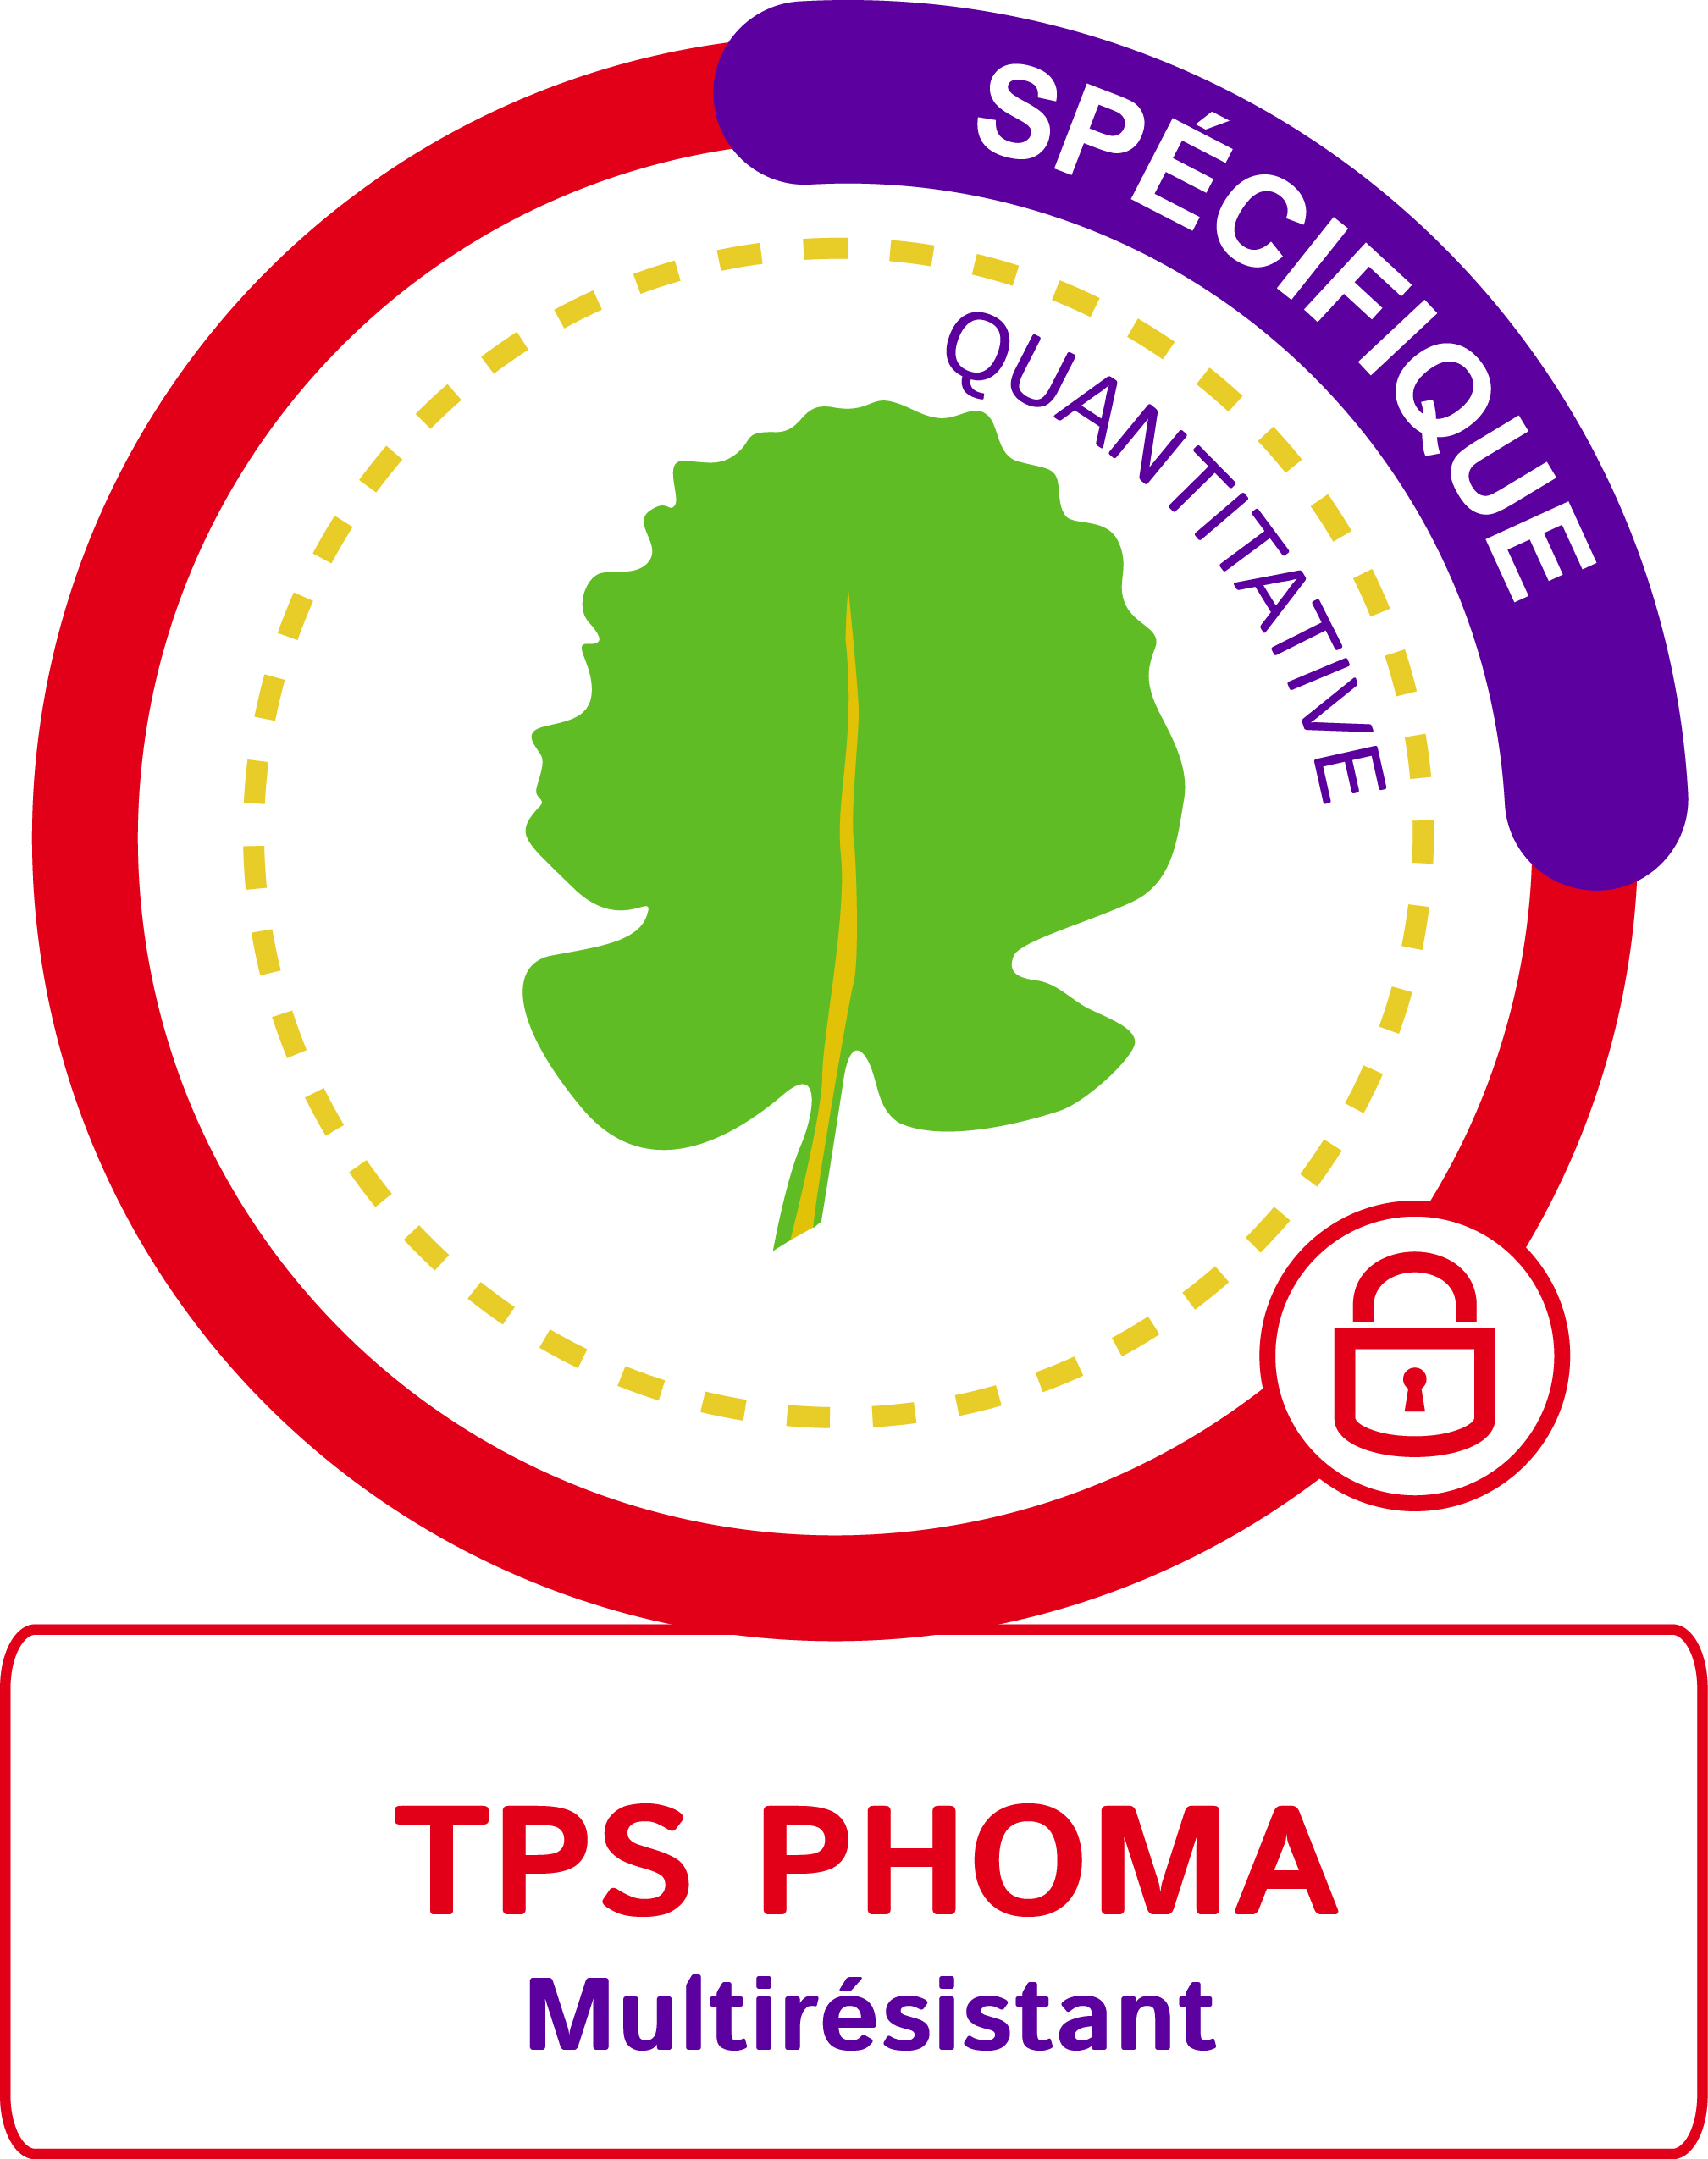 TPS phoma multirésistant spécifique